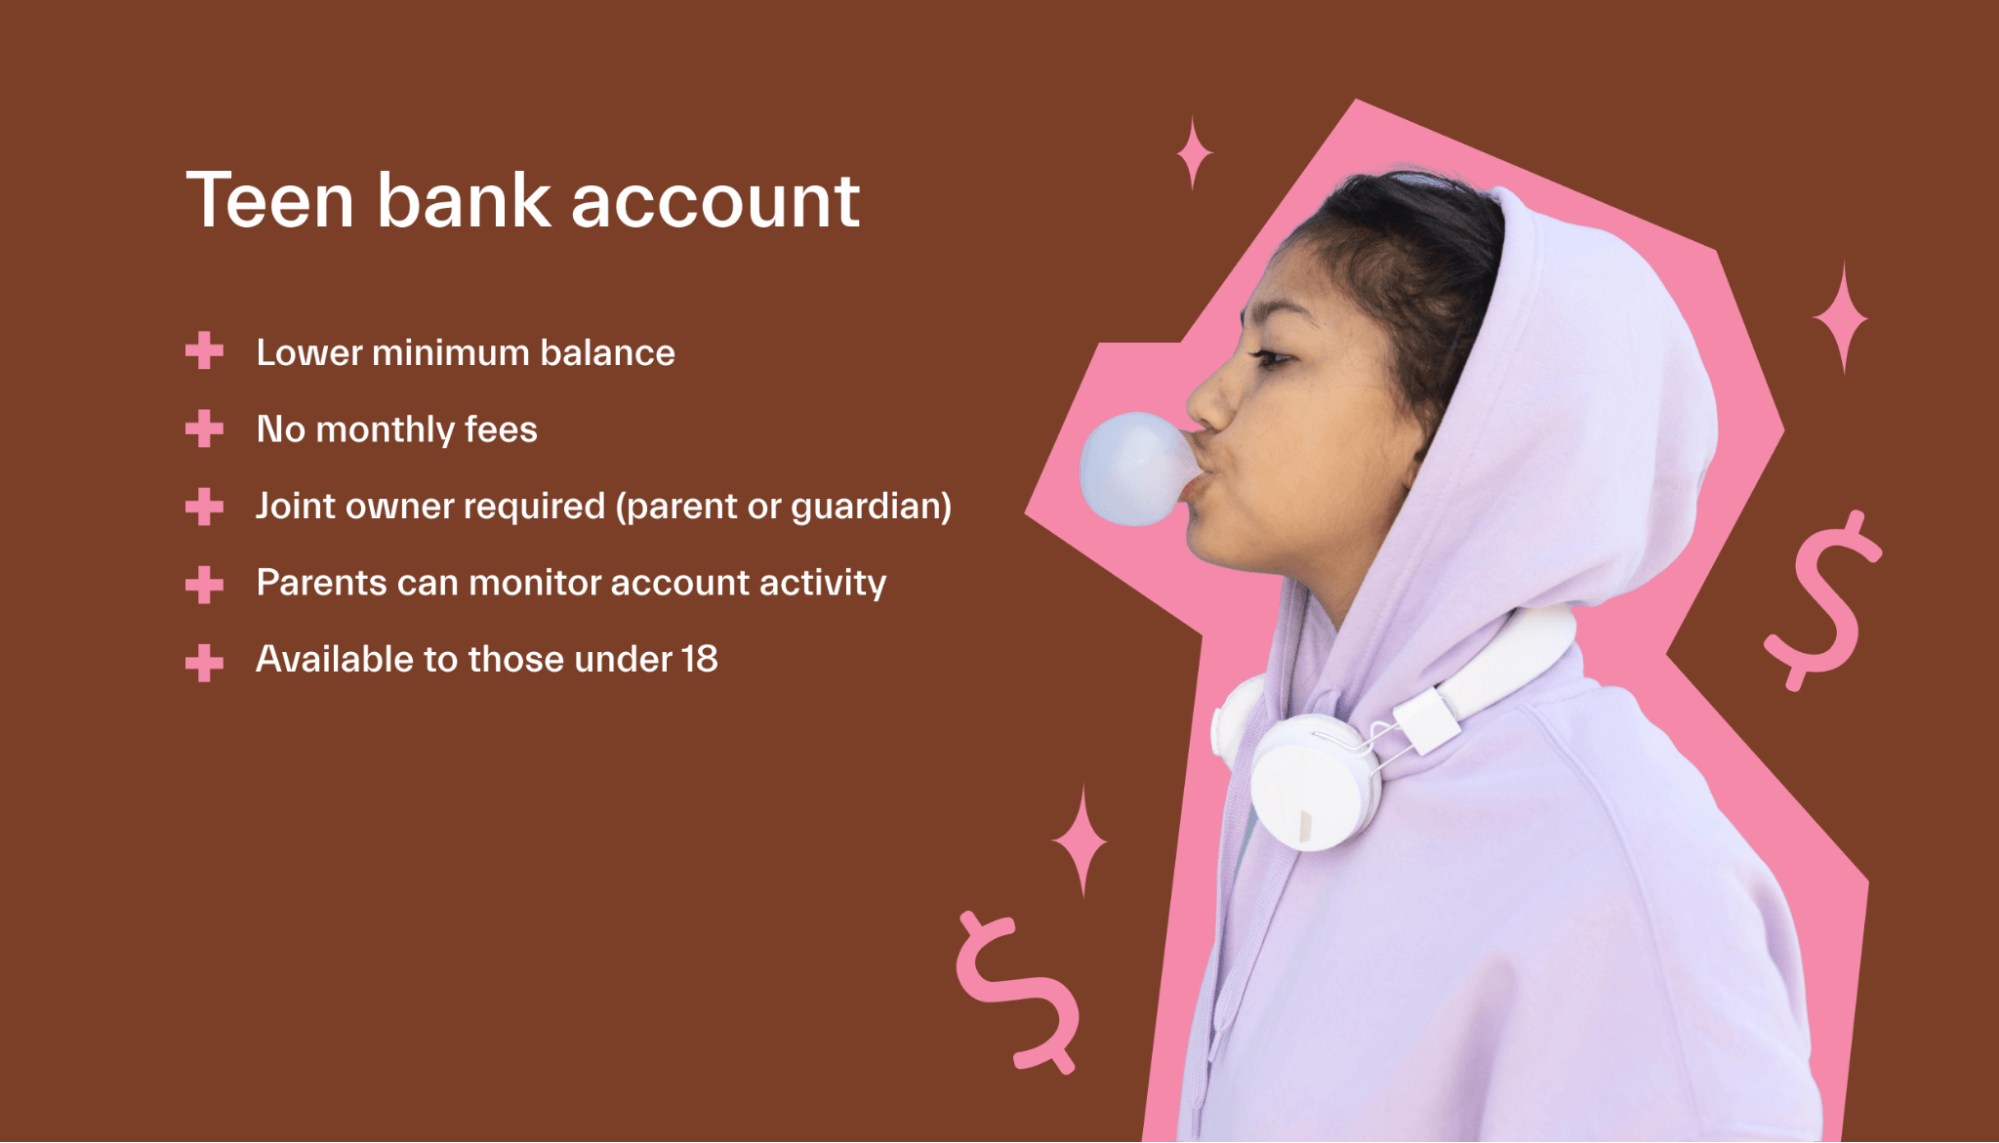 Teen bank account